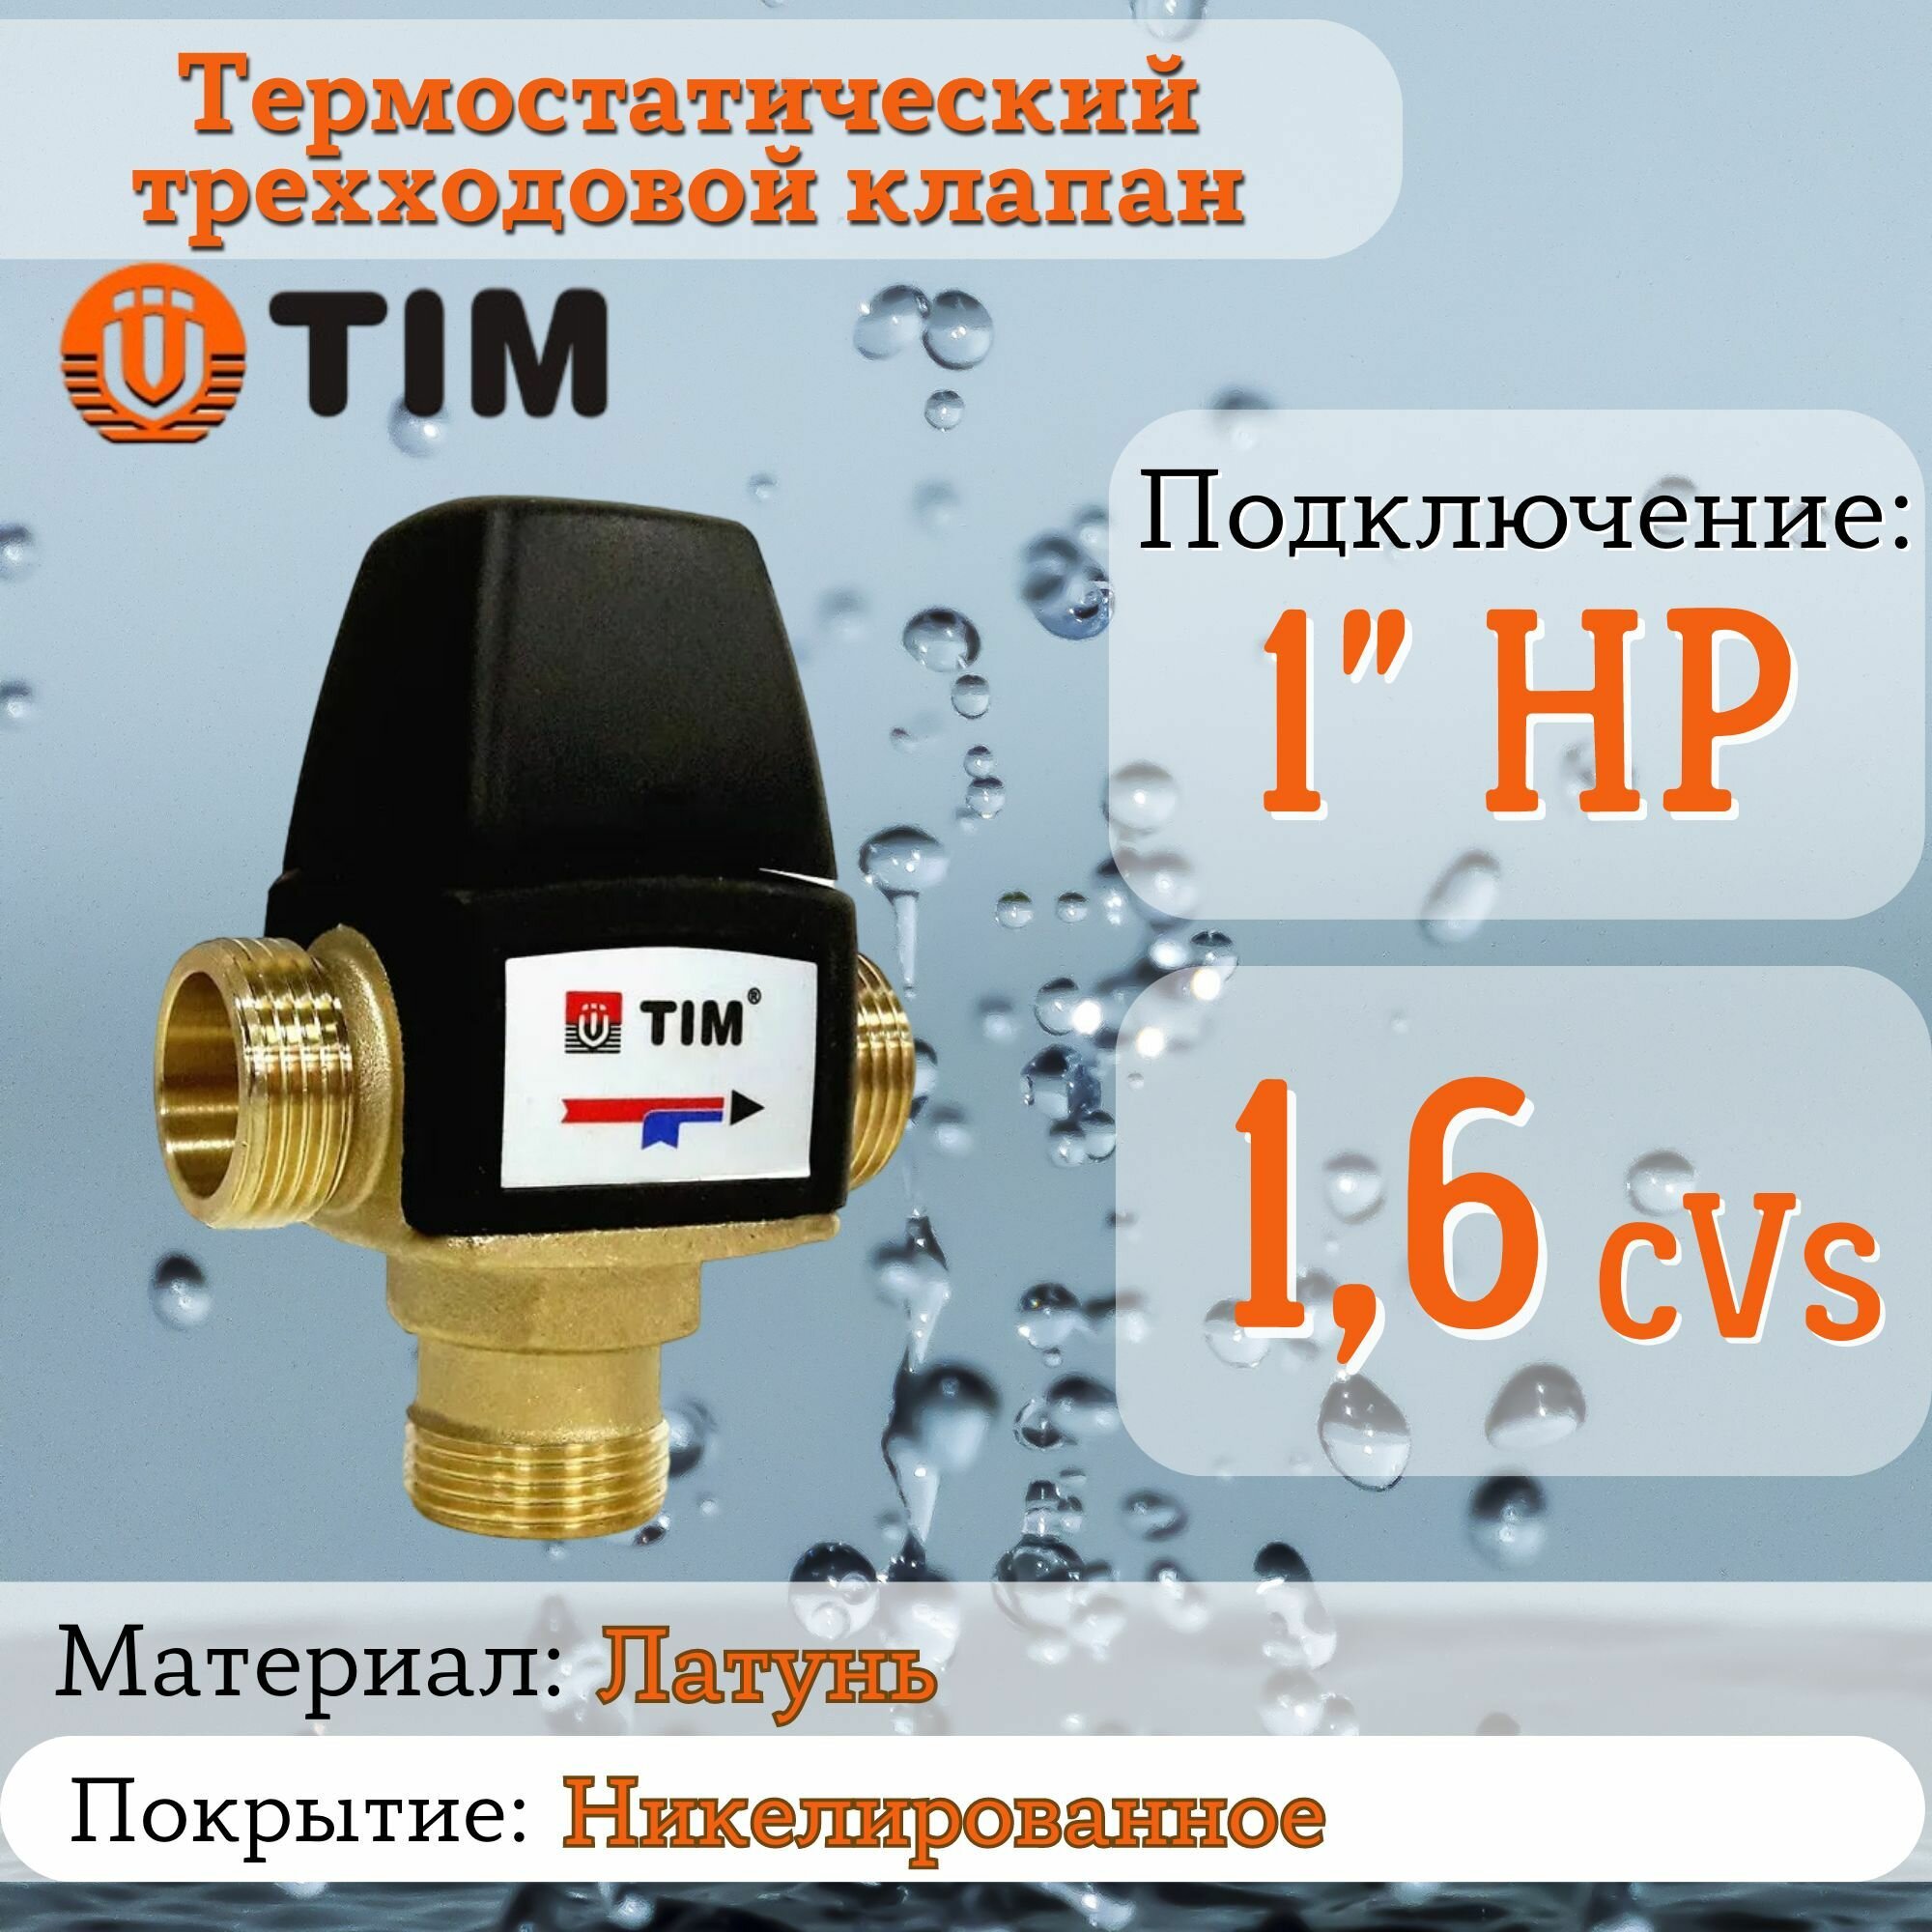 Термостатический трехходовой клапан 1.6kVs - 1" 35-60гр TIM